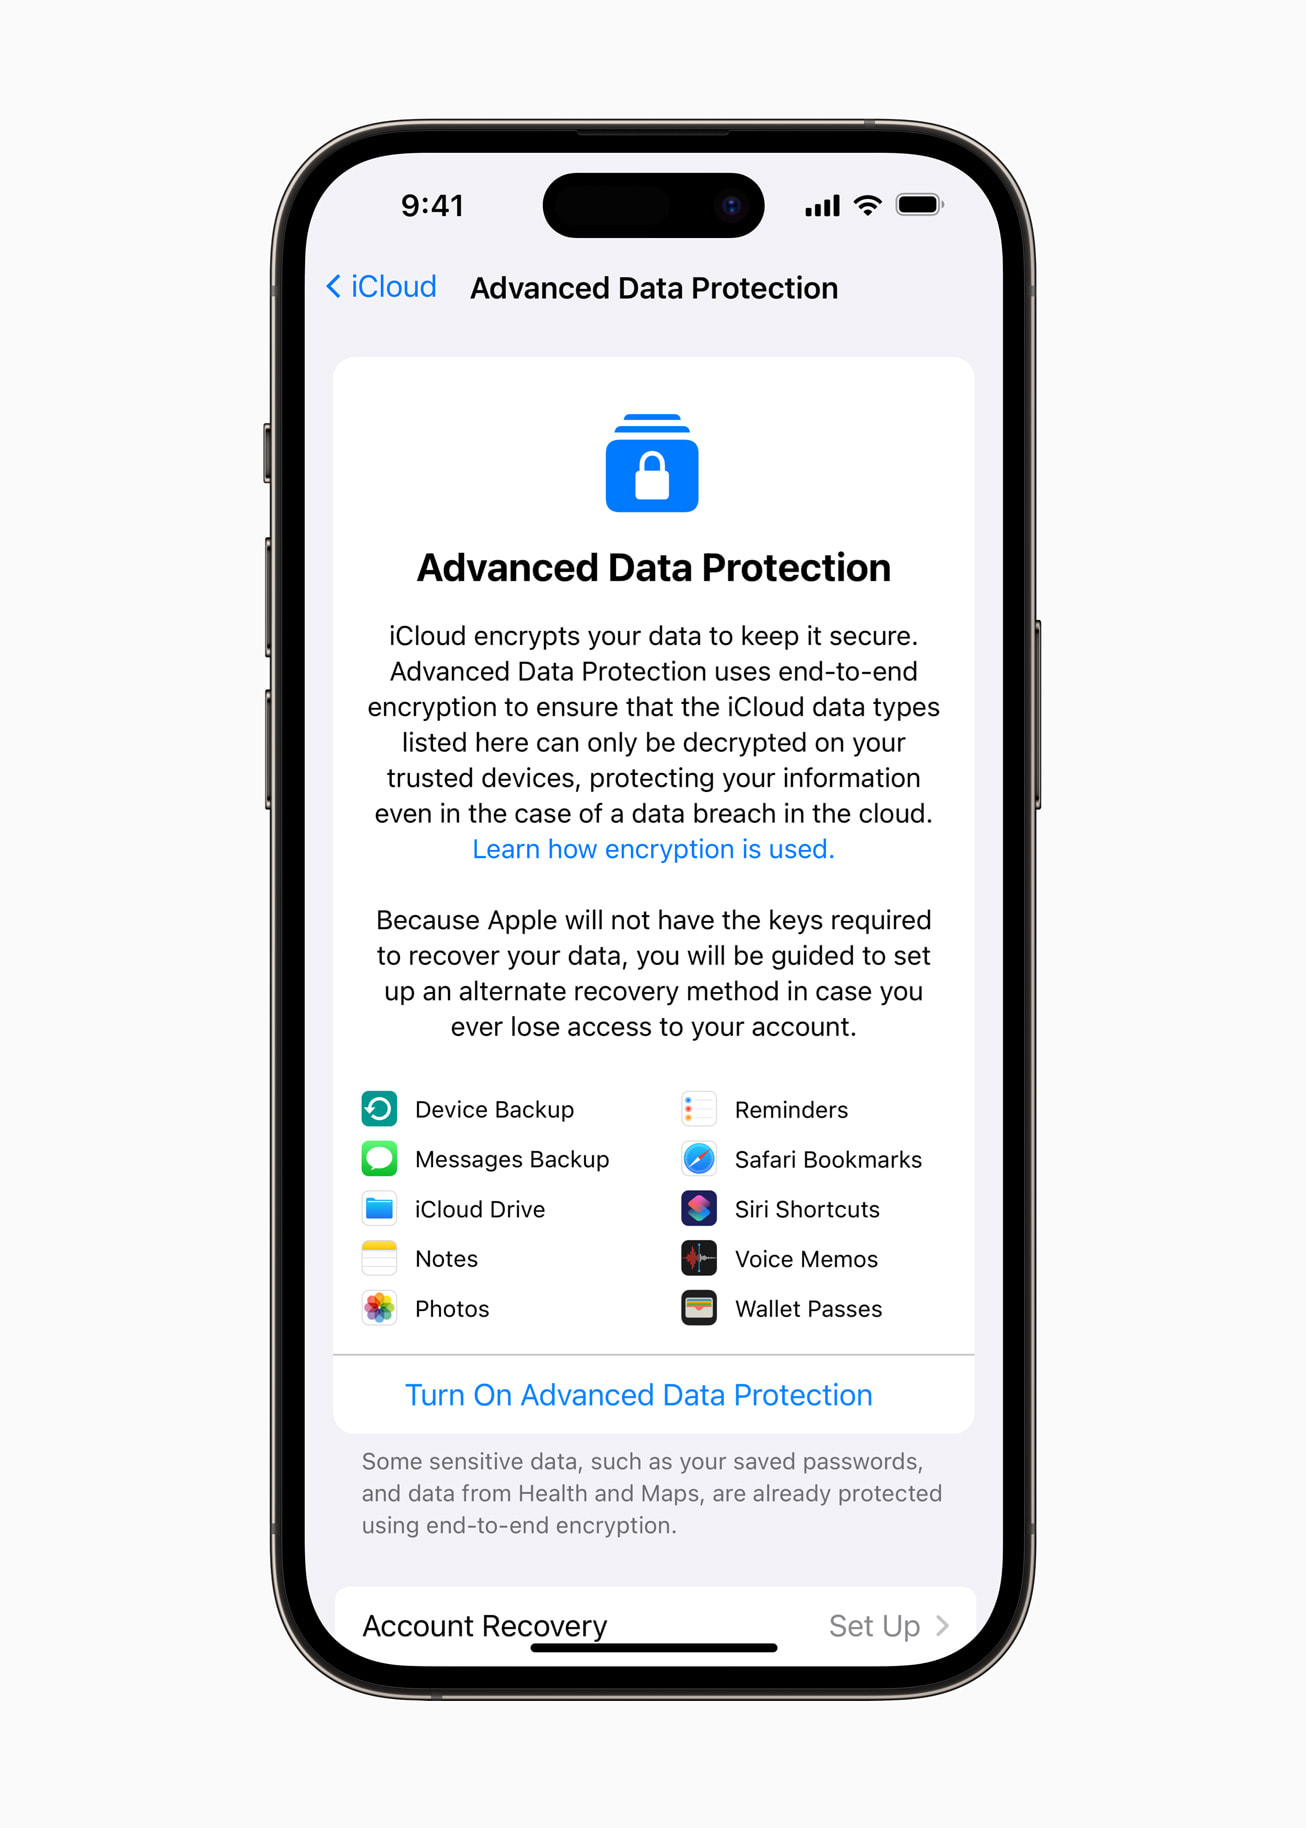 Advanced Data Protection para cifrar de punta a punta todos los datos de iCloud